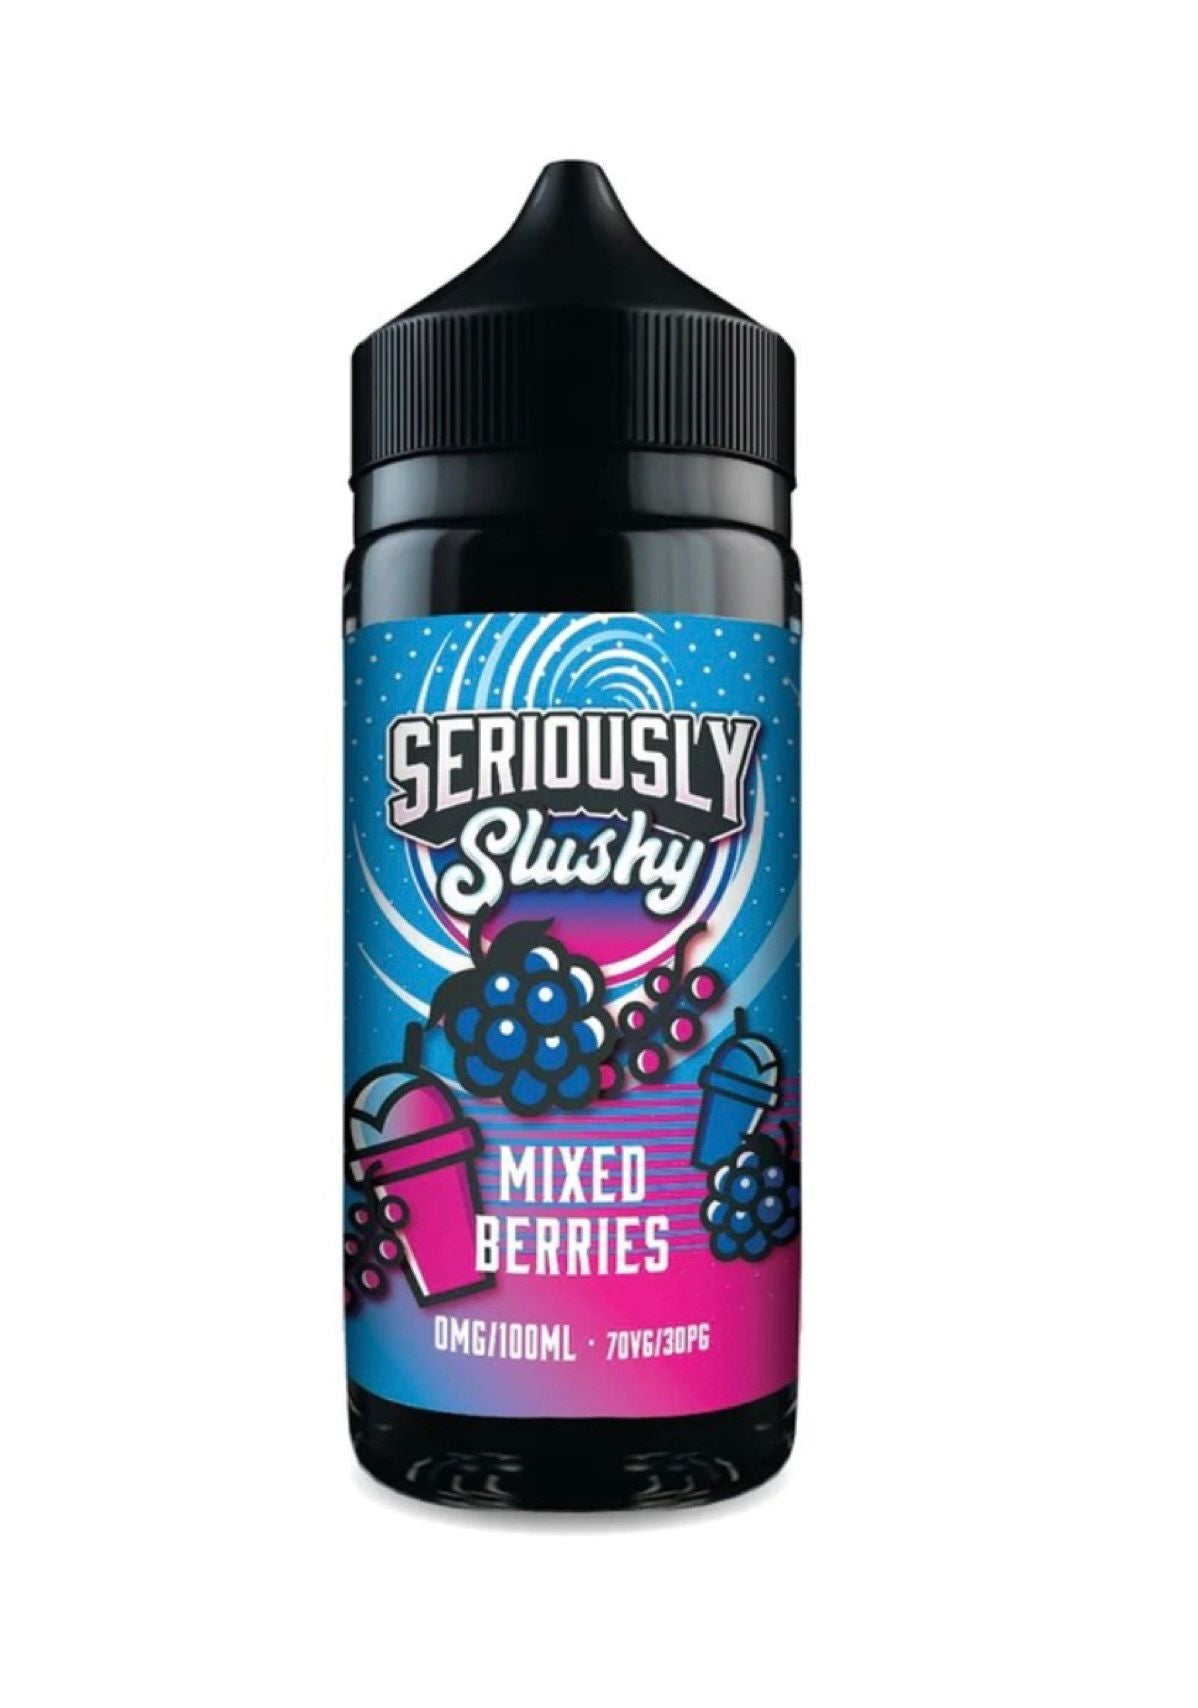 Mixed Berry's Seriously Slushy 100ml Shortfill